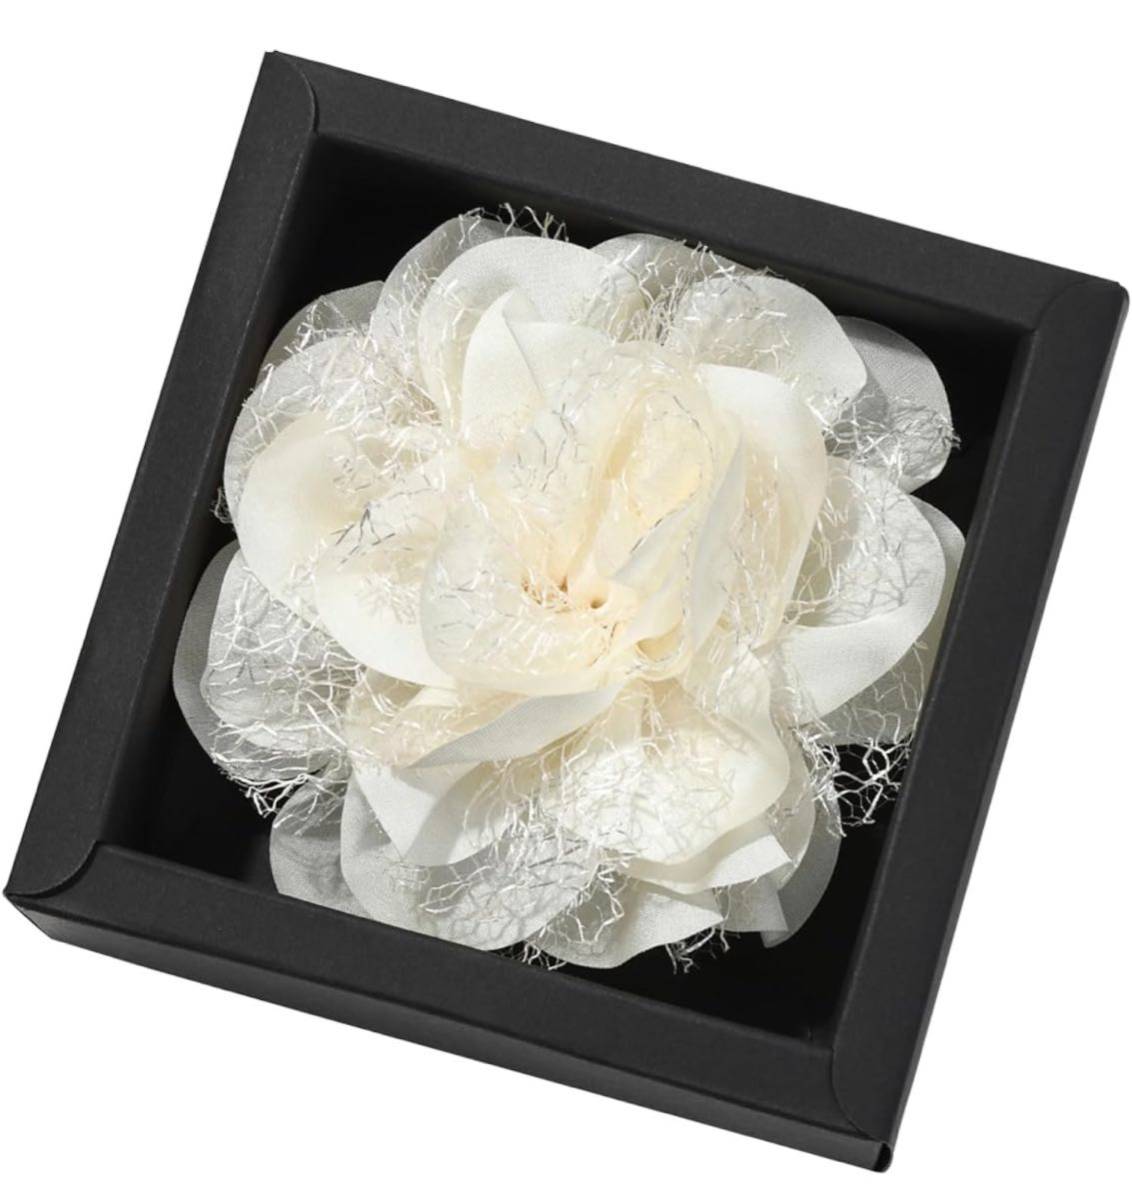  букетик цветок цветок украшение довольно большой брошь церемония окончания входить . тип церемония формальный жакет костюм подарок свадьба . называется платье 